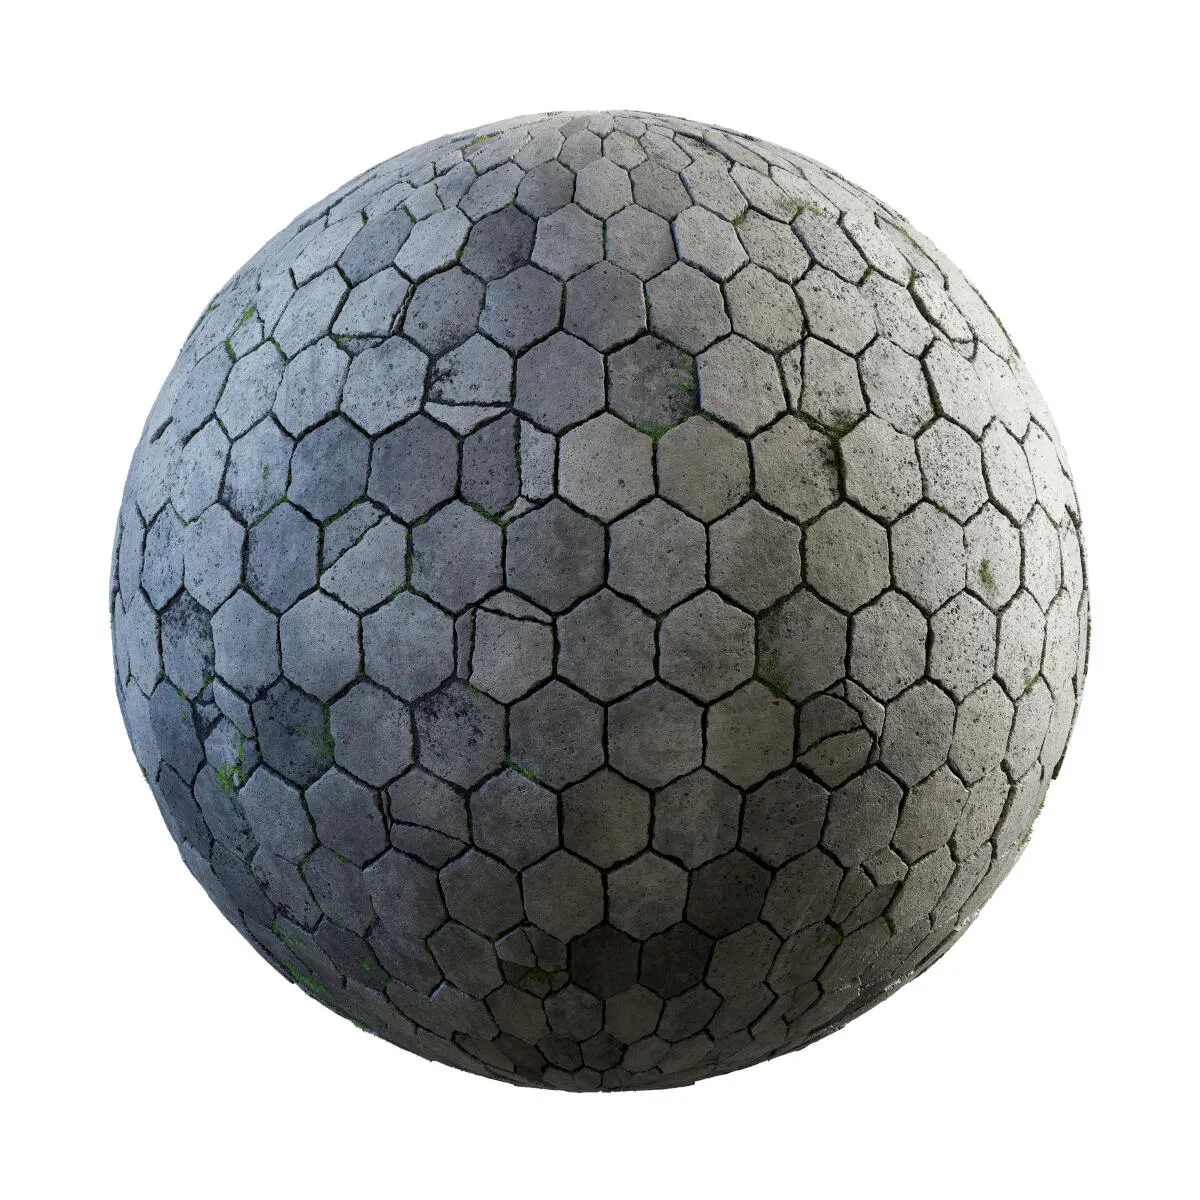 PBR Textures Volume 34 – Pavements – 4K – damageded_hexagon_concrete_pavement_36_49